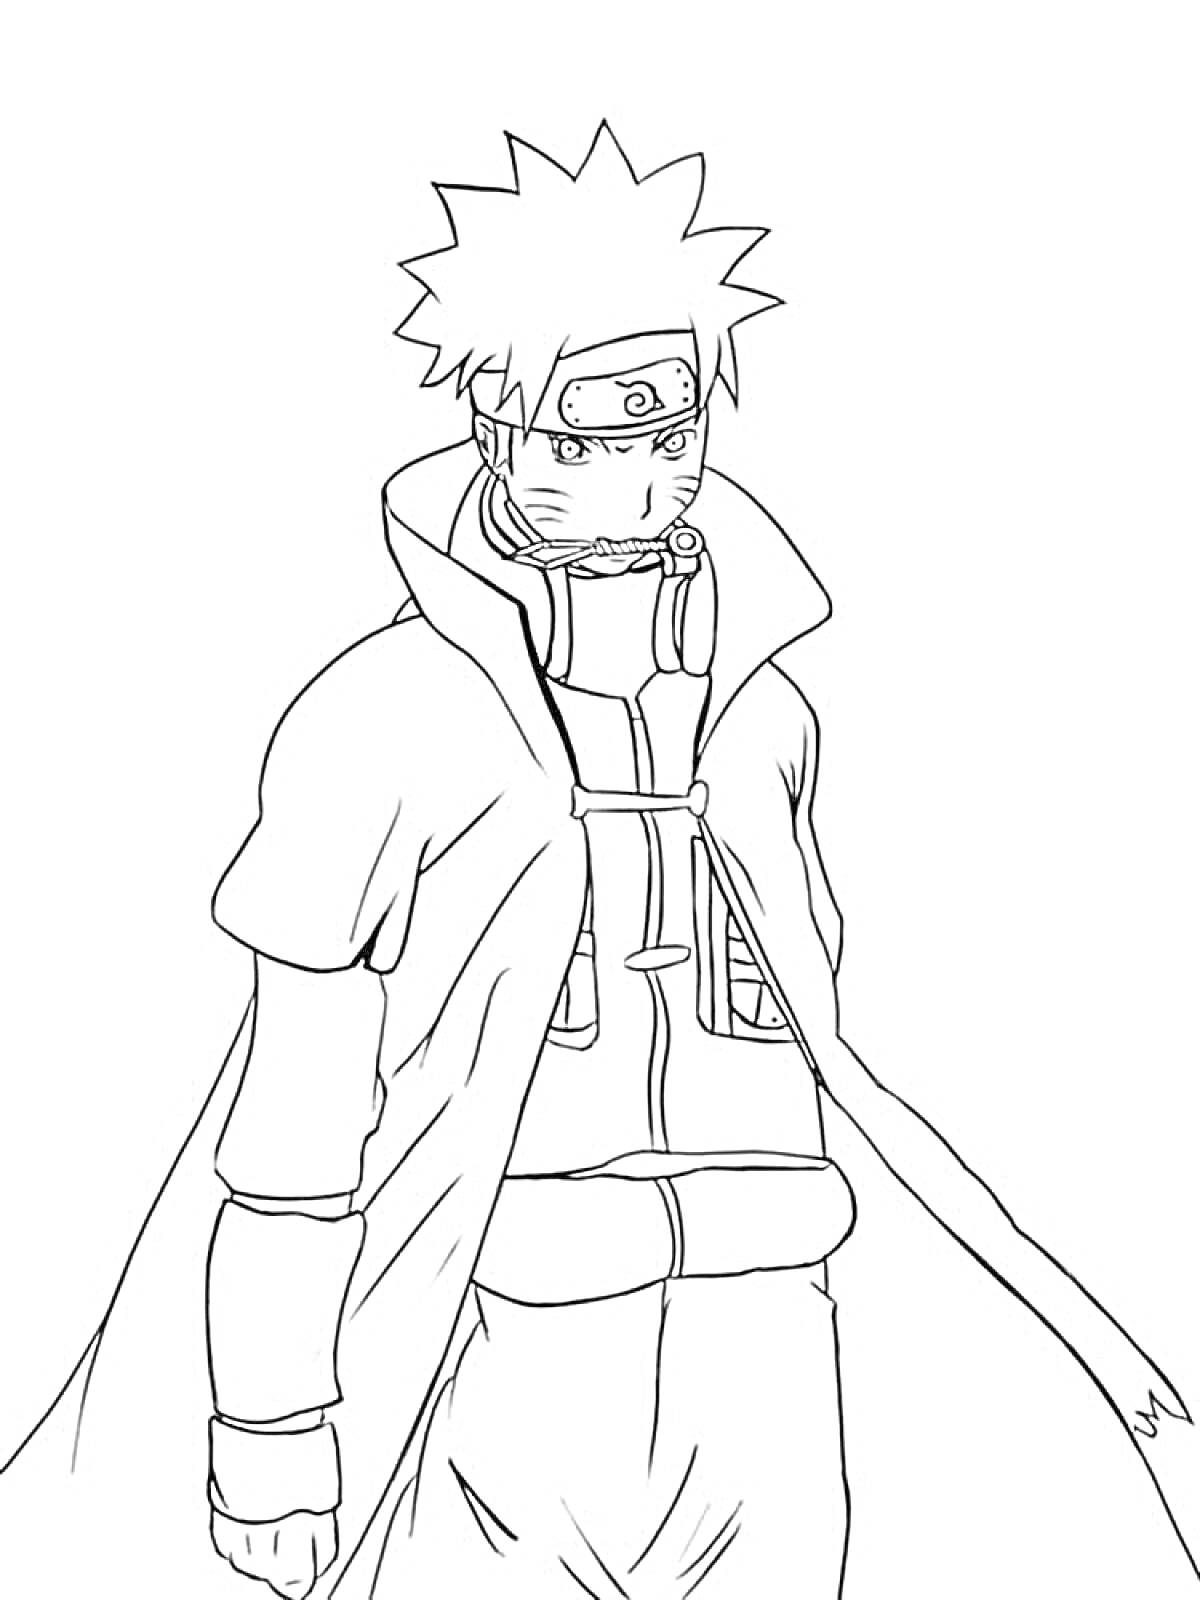 Naruto в плаще и повязке с эмблемой, ручной стиль